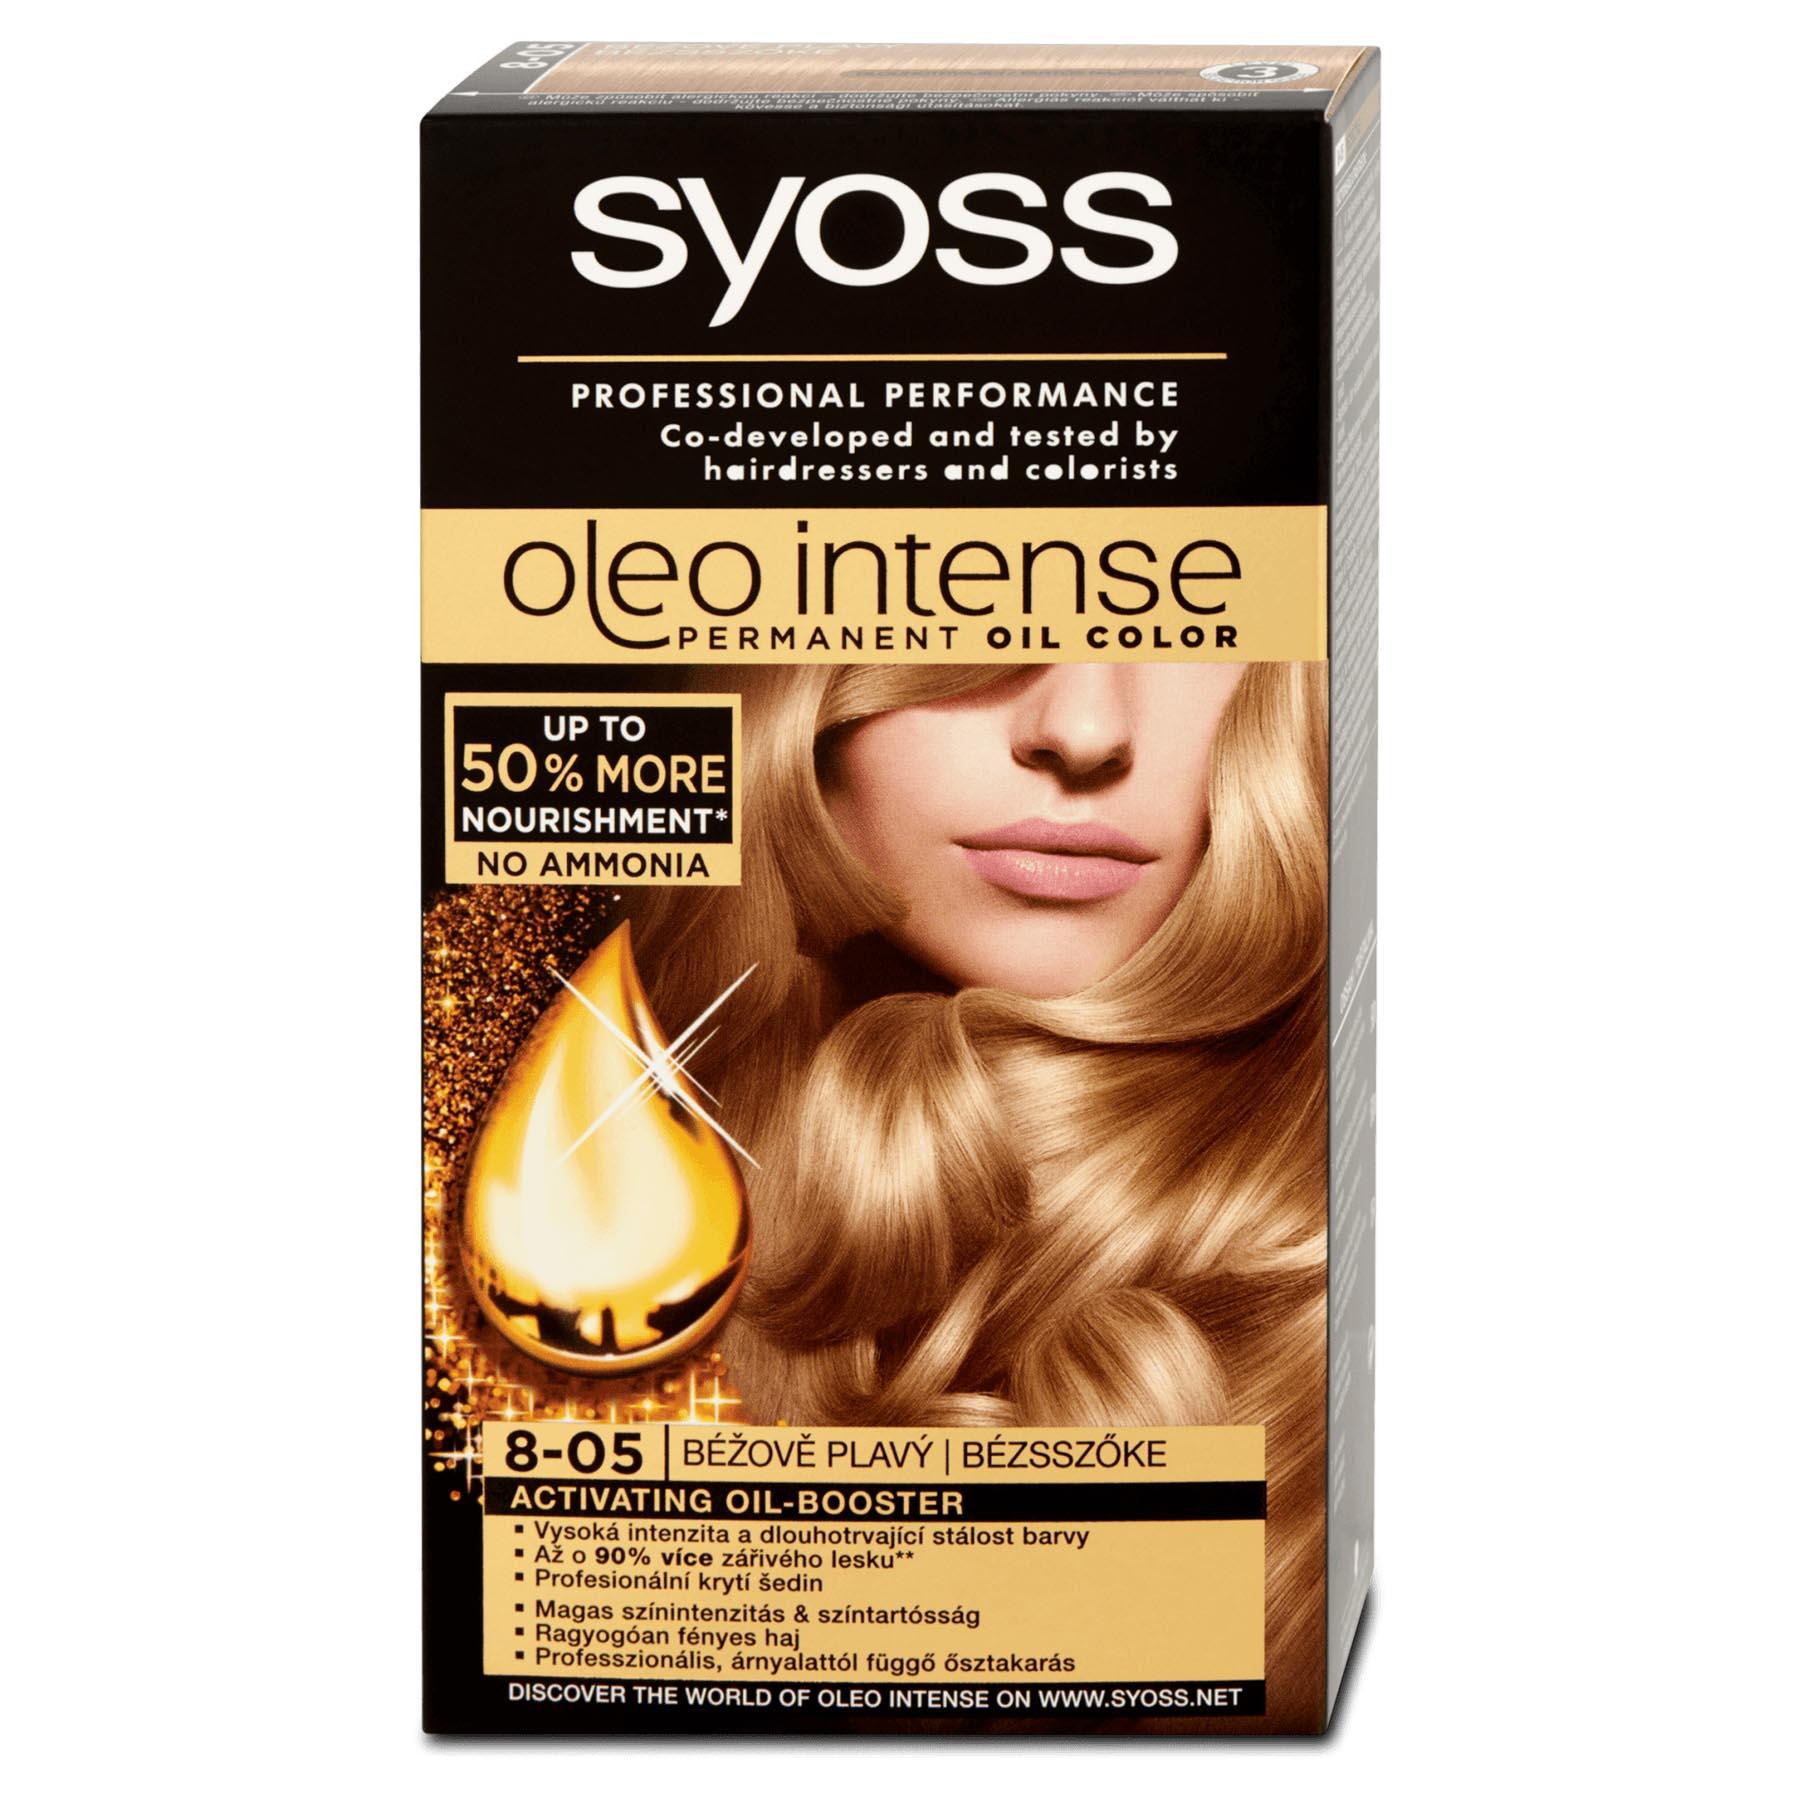 Bảng màu thuốc nhuộm tóc Syoss cùng hàng loạt màu sắc tuyệt đẹp sẽ khiến bạn muốn thử và tạo nên một phong cách mới cho tóc mình. Đừng ngần ngại khám phá và lựa chọn chiếc bảng màu Syoss với sự đa dạng và hợp thời trang.